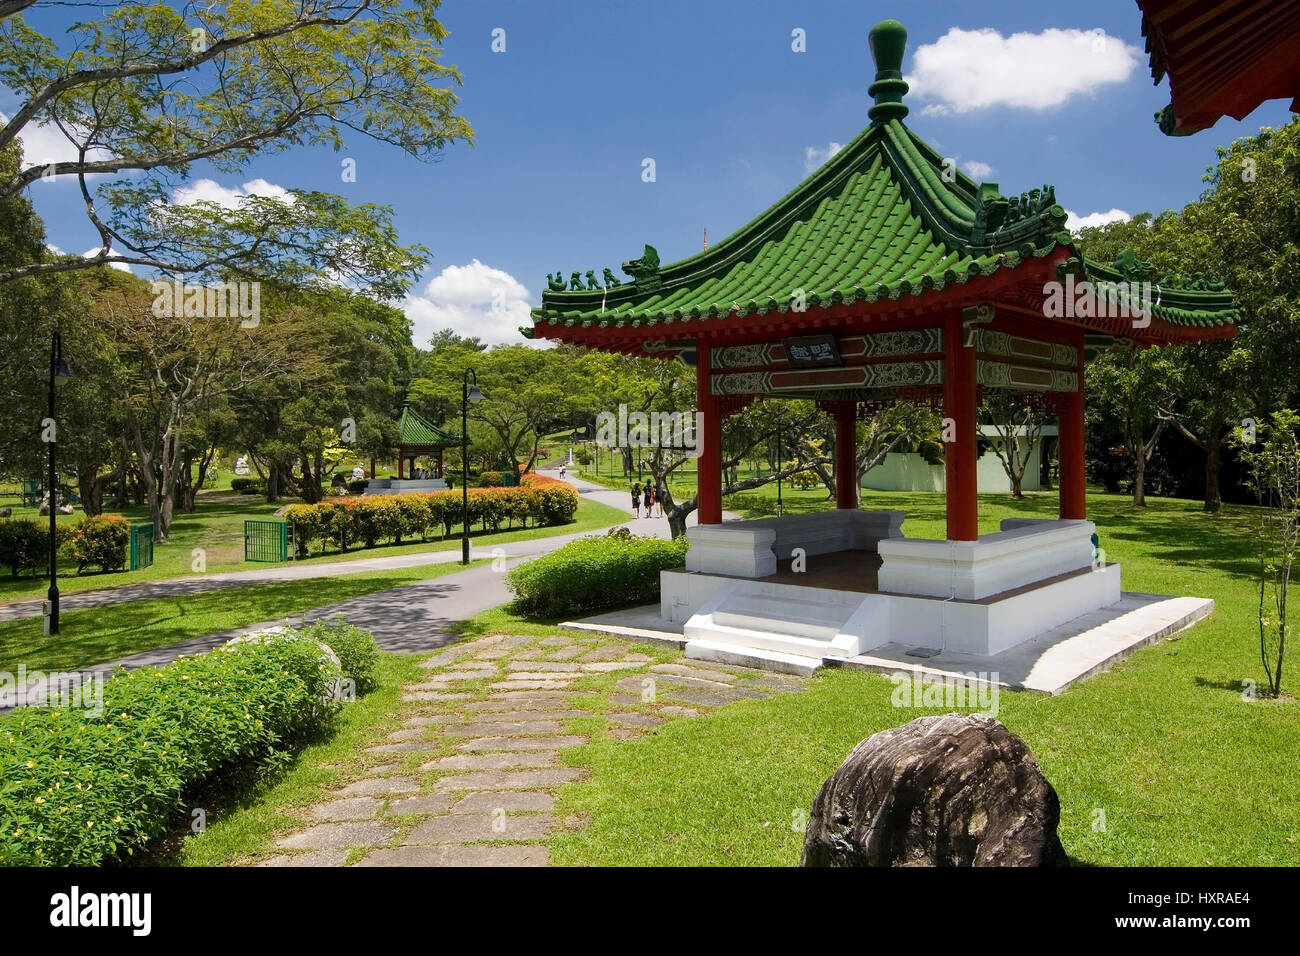 Jardin japonais et chinois de Singapour, en Asie (pas de Pr), Chinesischer japanischer Garten und dans Singapore, Asien (pas de pr) Banque D'Images